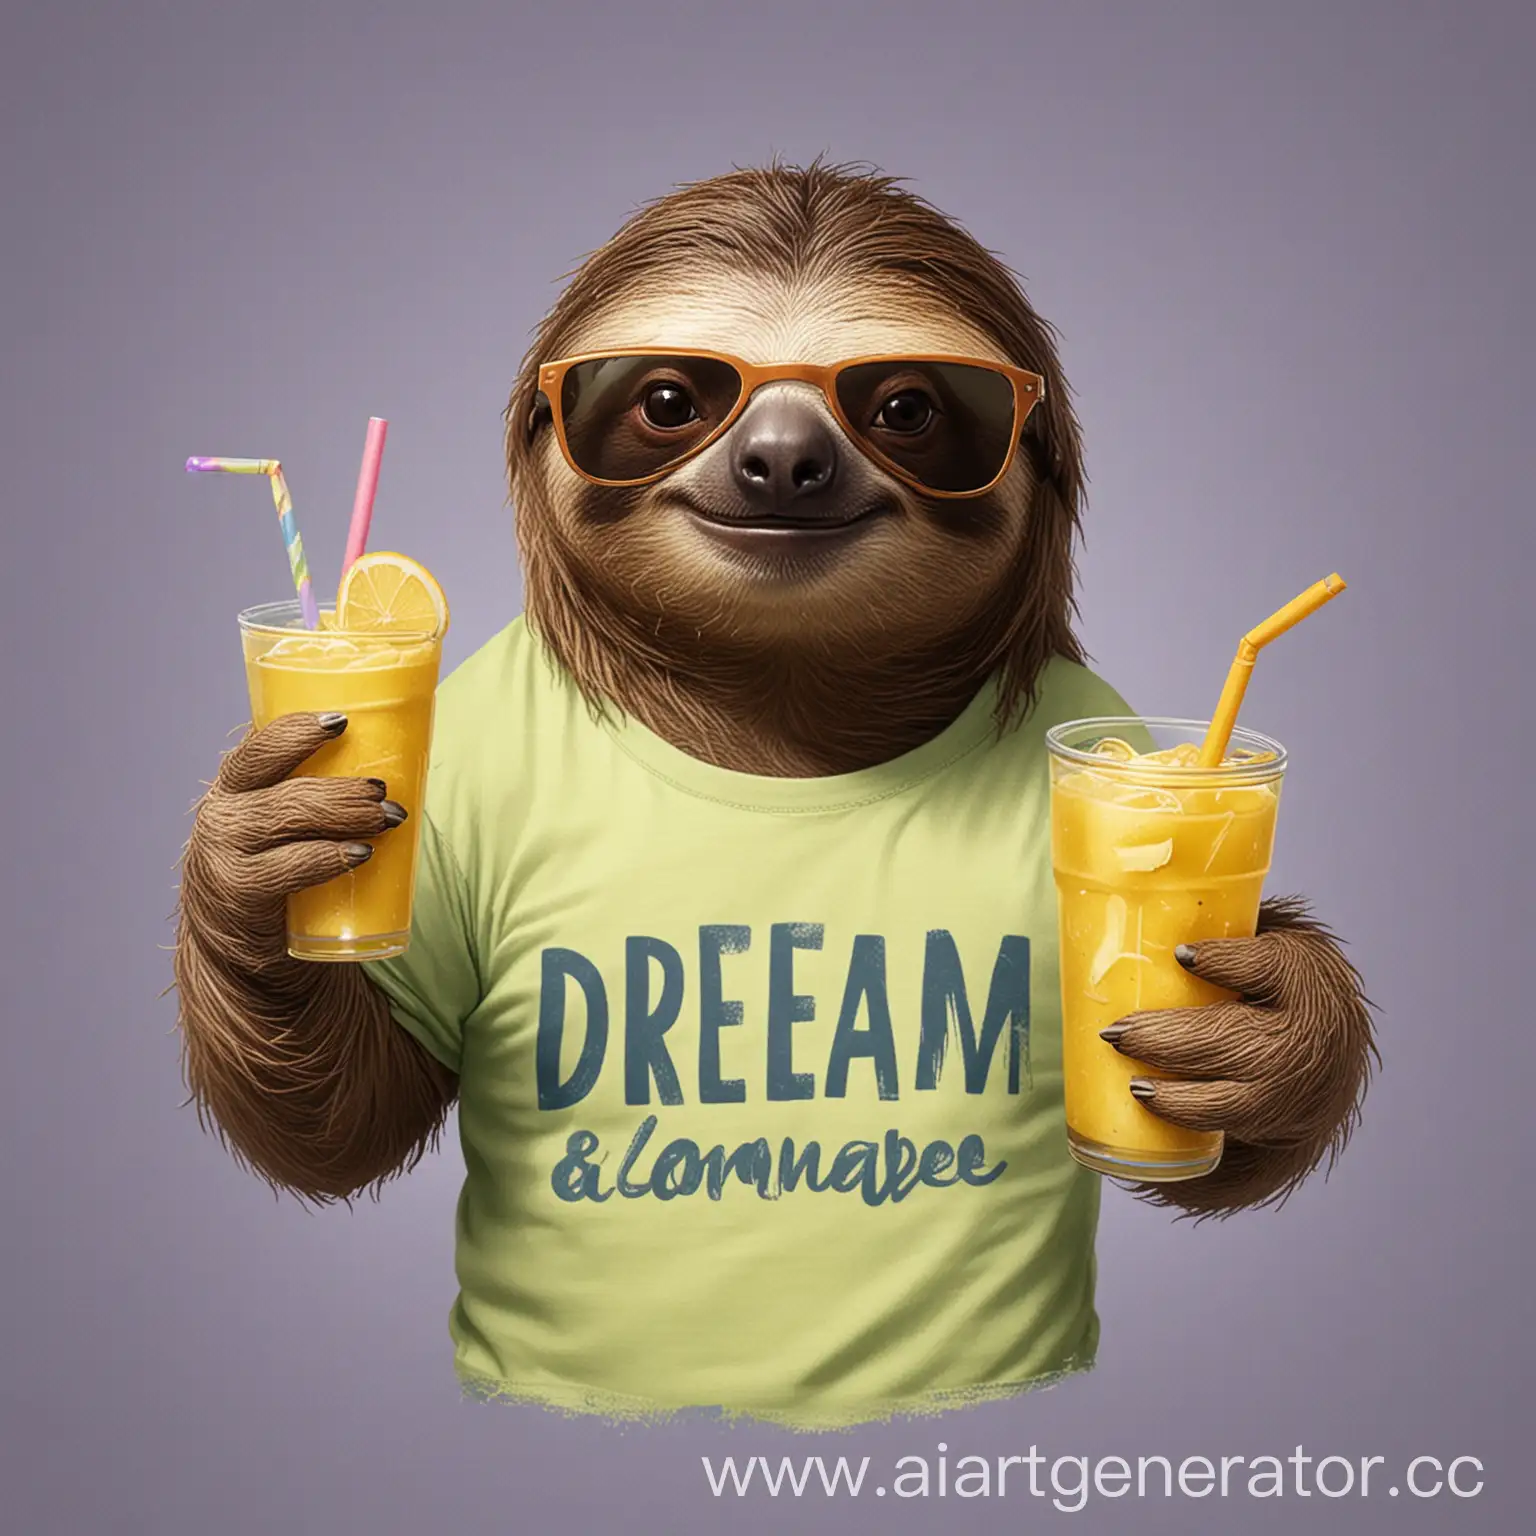 ленивец в солнечных очках и в футболке с надписью работа мечты держит в руках лимонад 